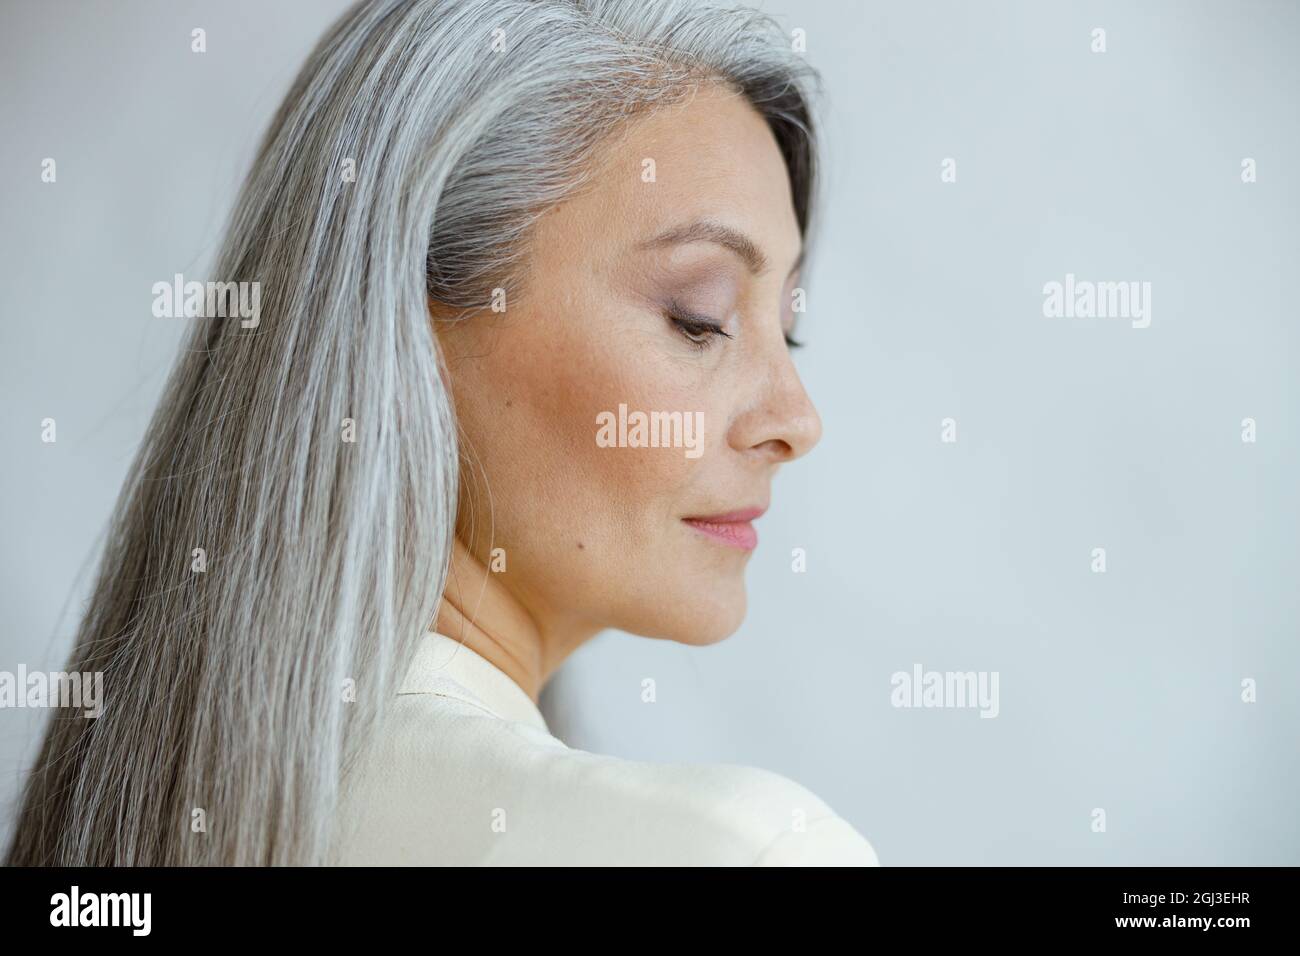 Hübsche asiatische Frau mittleren Alters mit lockeren geraden grauen Haaren auf hellem Hintergrund Stockfoto